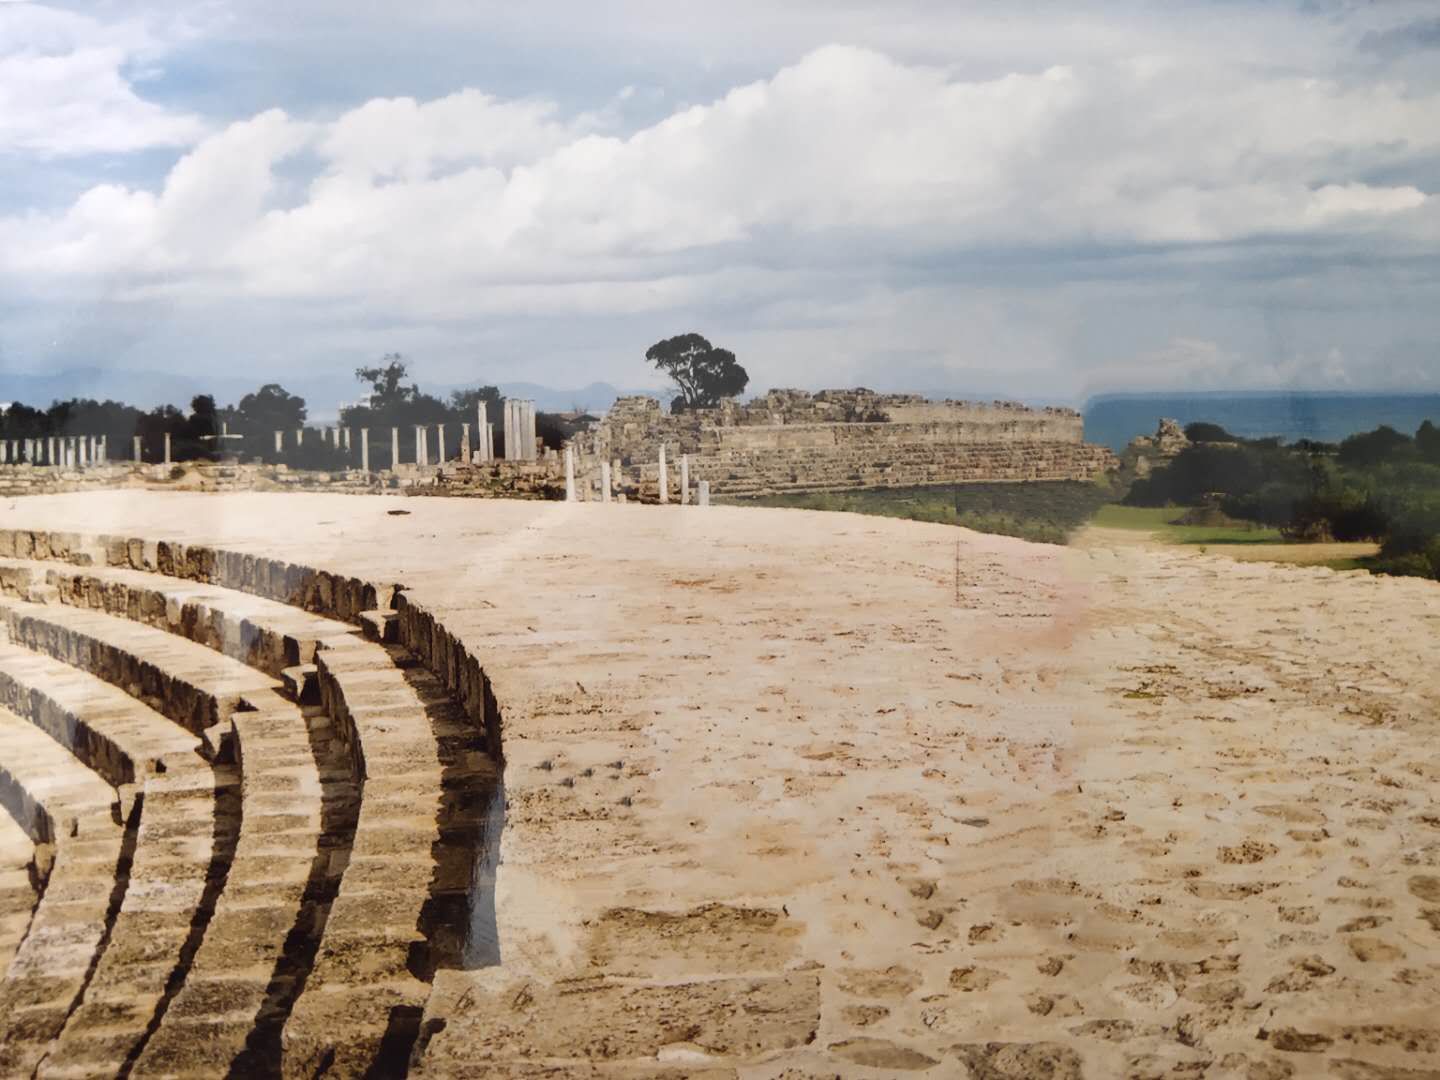 萨拉米斯古都遗址位于塞浦路斯东部海岸,据荷马史诗记载,公元前十二